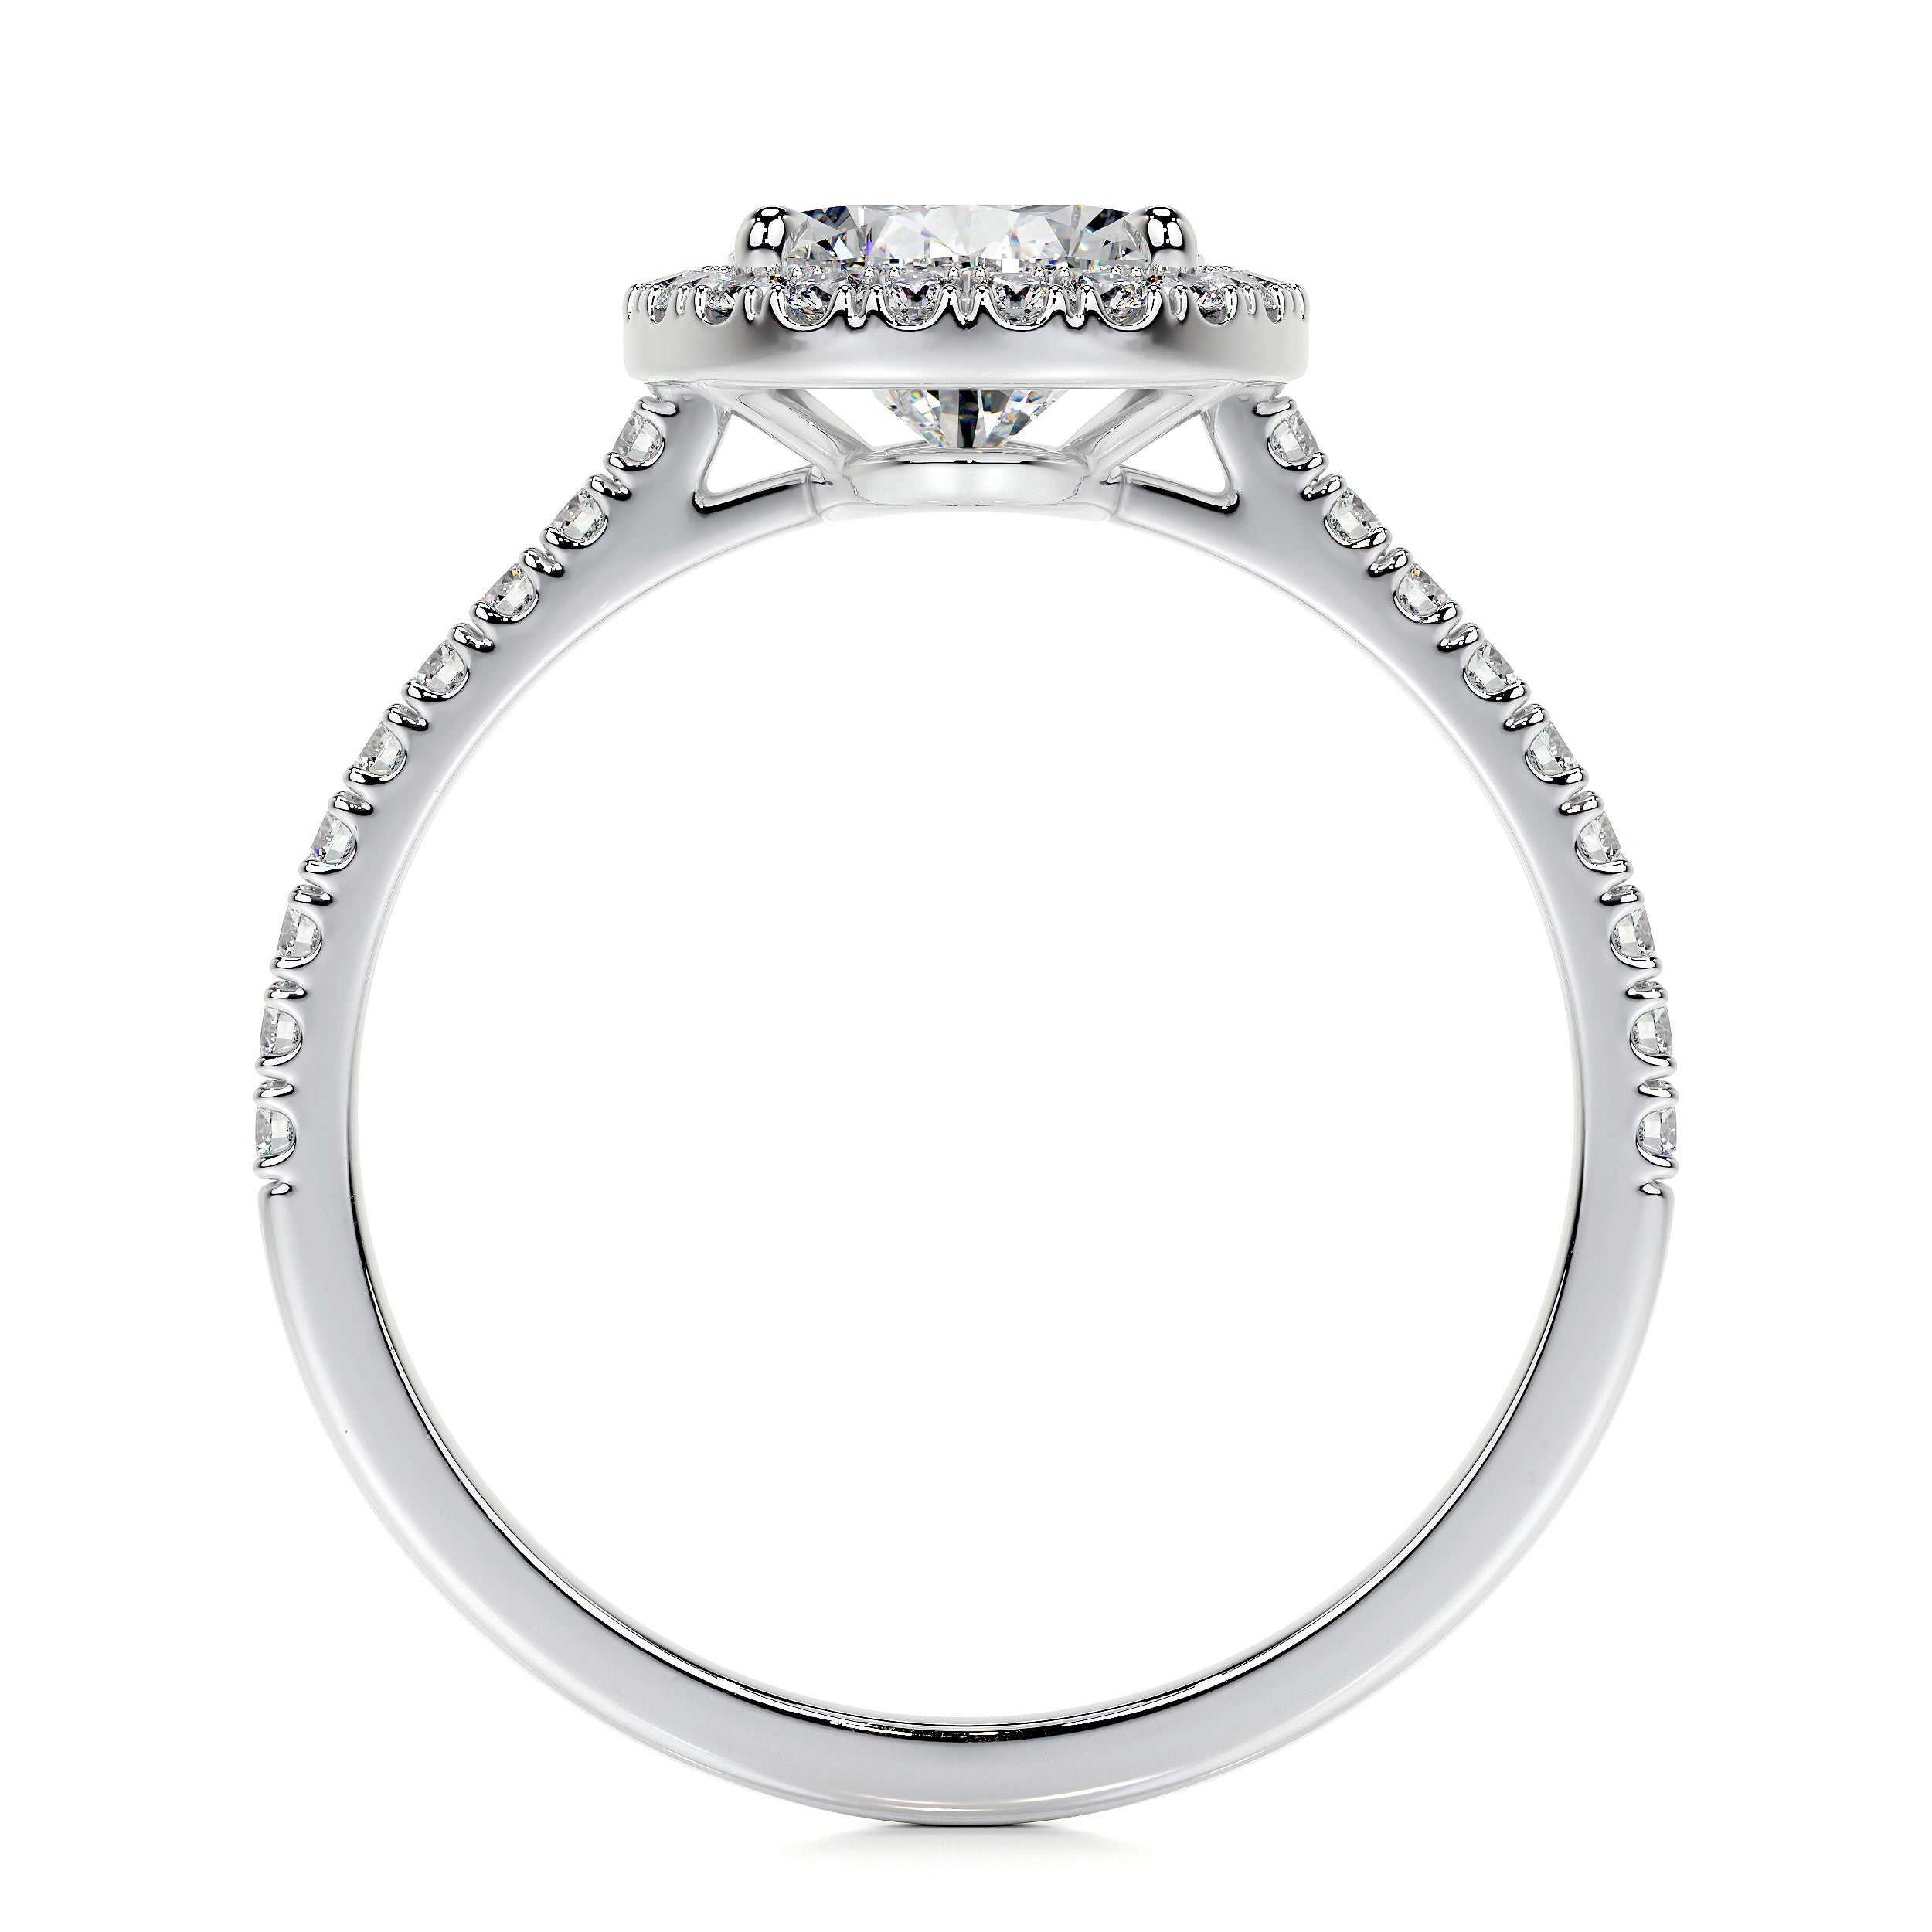 Sophia Lab Grown Diamond Ring   (2.5 Carat) -14K White Gold